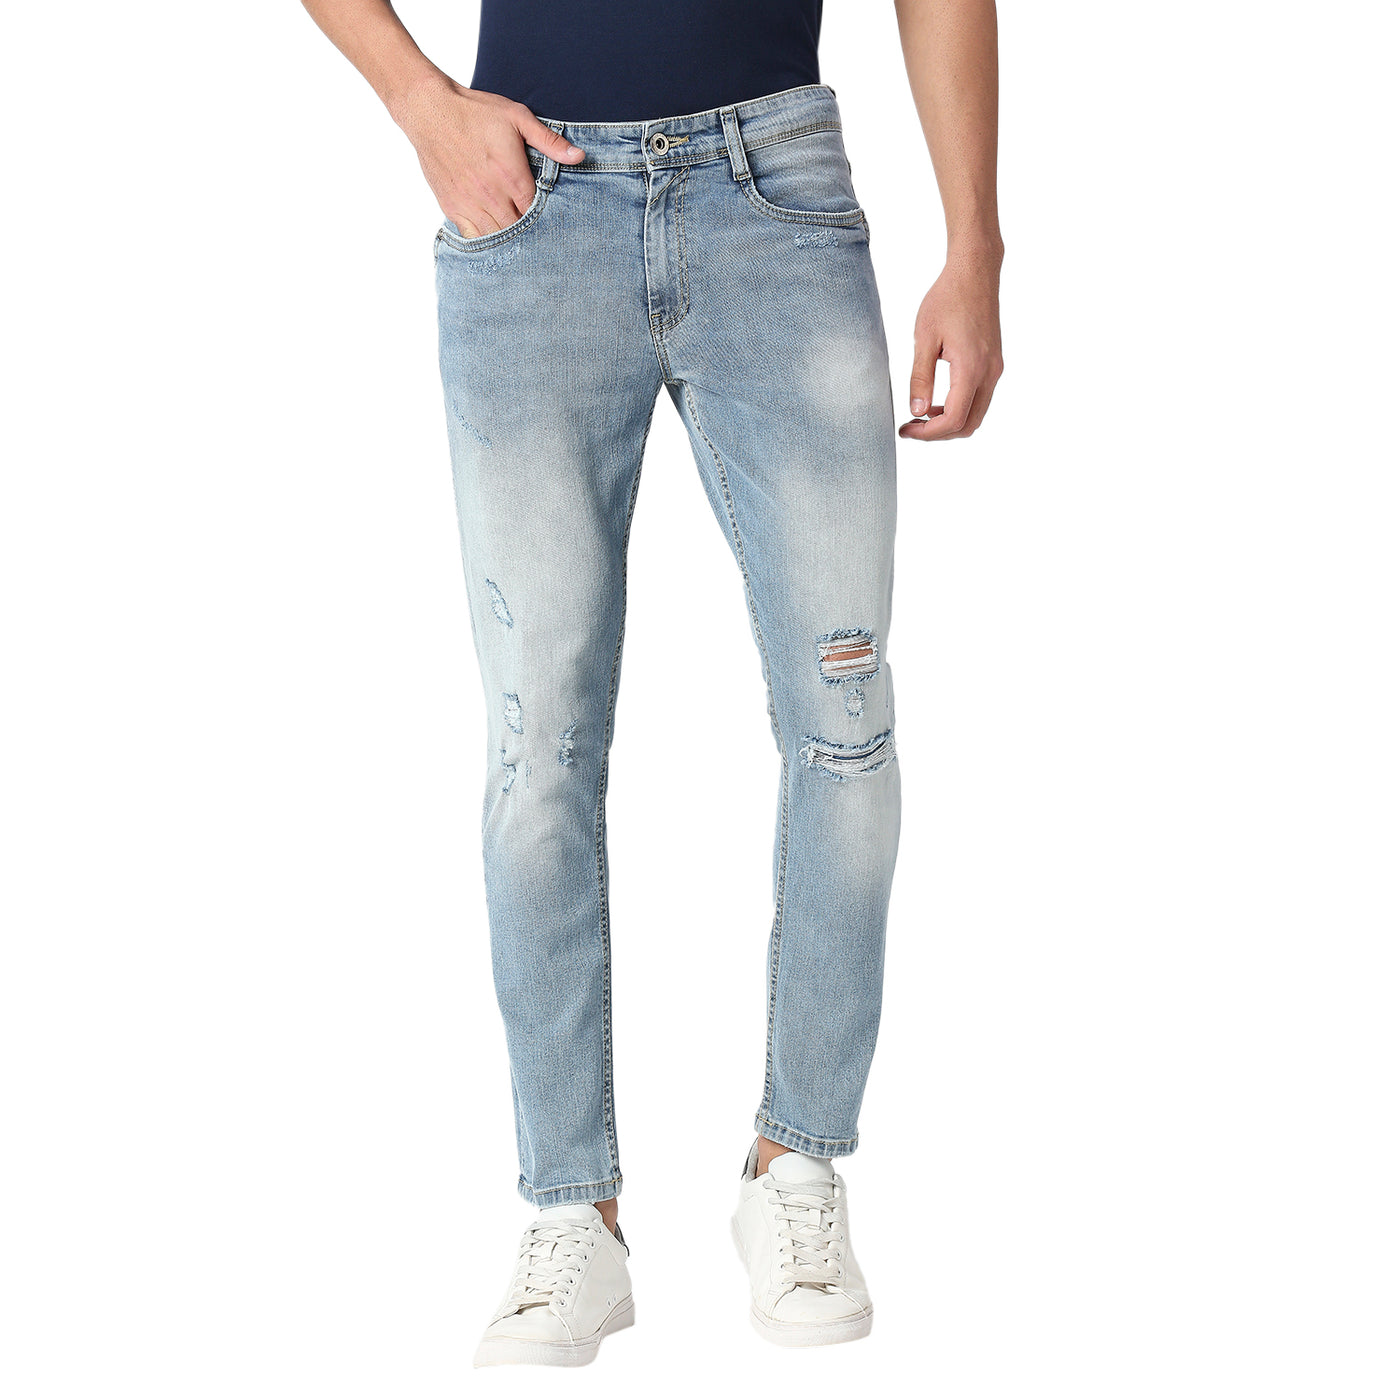 Damien men's jeans slim fit regular waist straight leg light blue – CROSS  JEANS